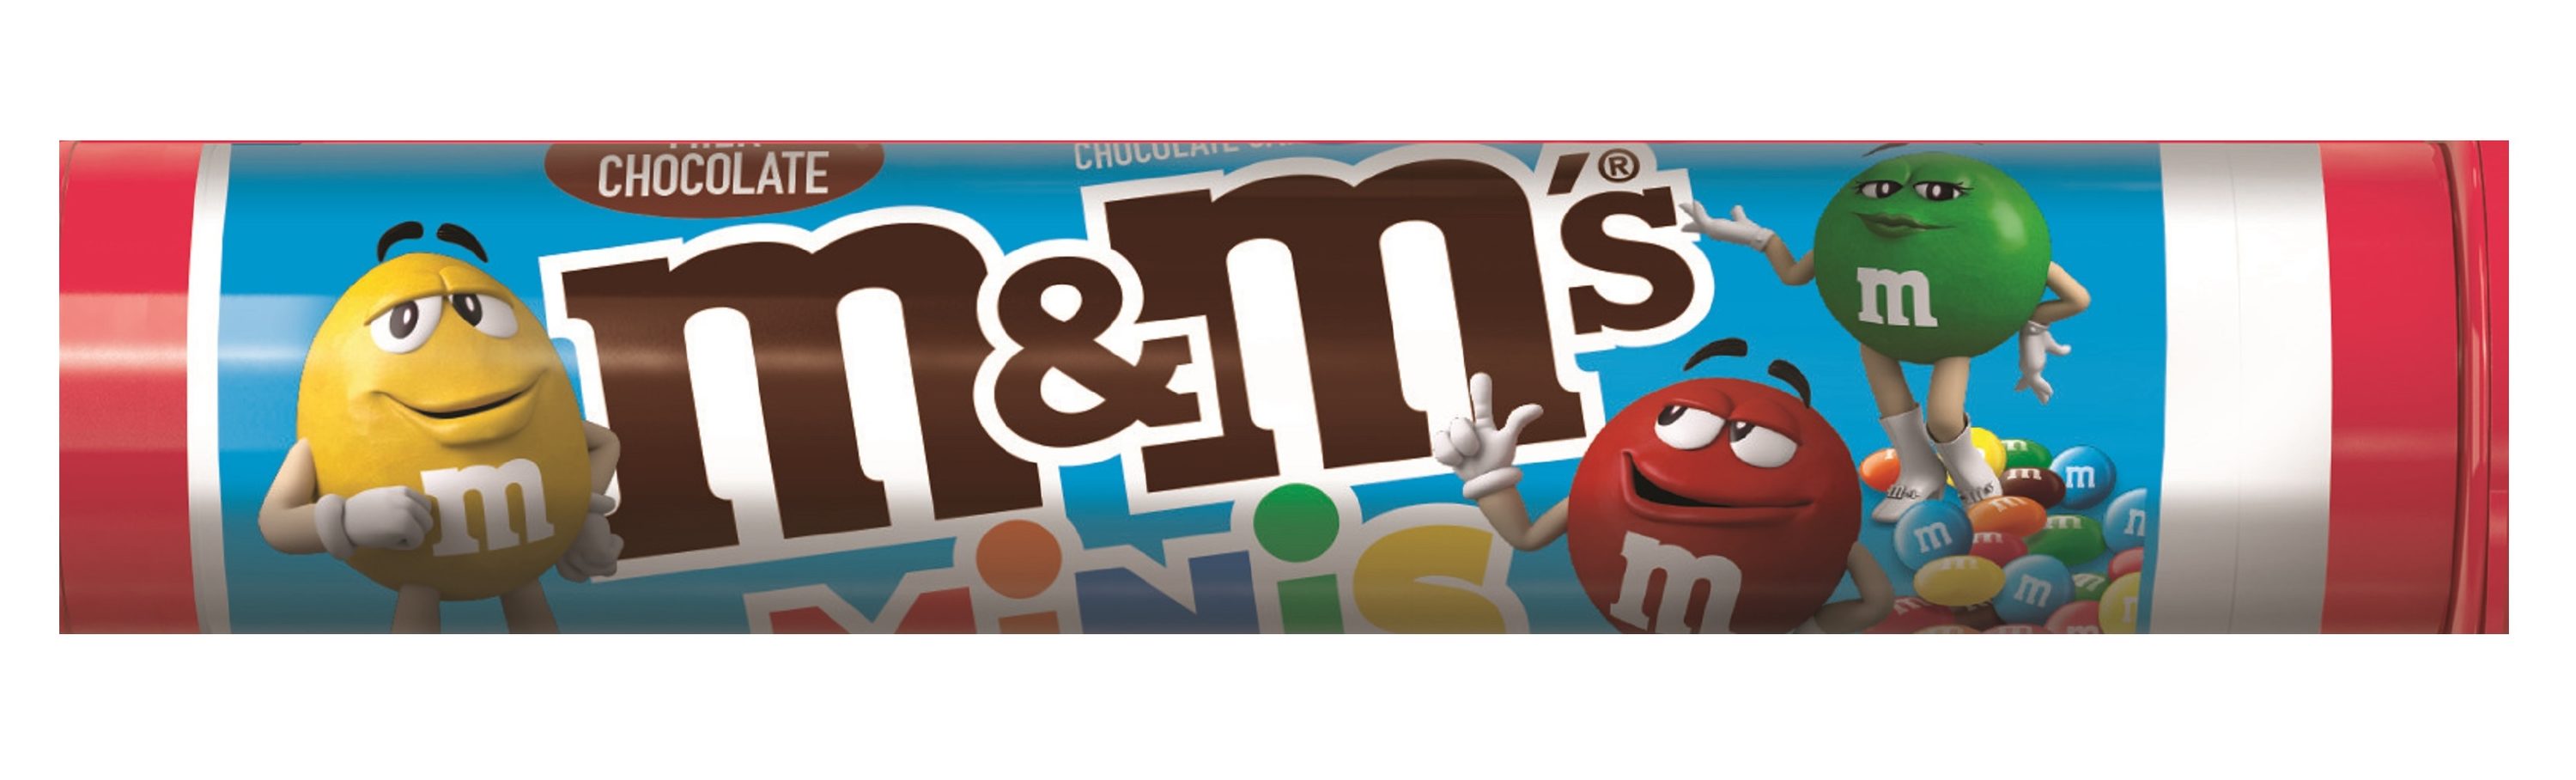 M&M'S Mini Milk Chocolate M&M'S 1.77 oz Tube